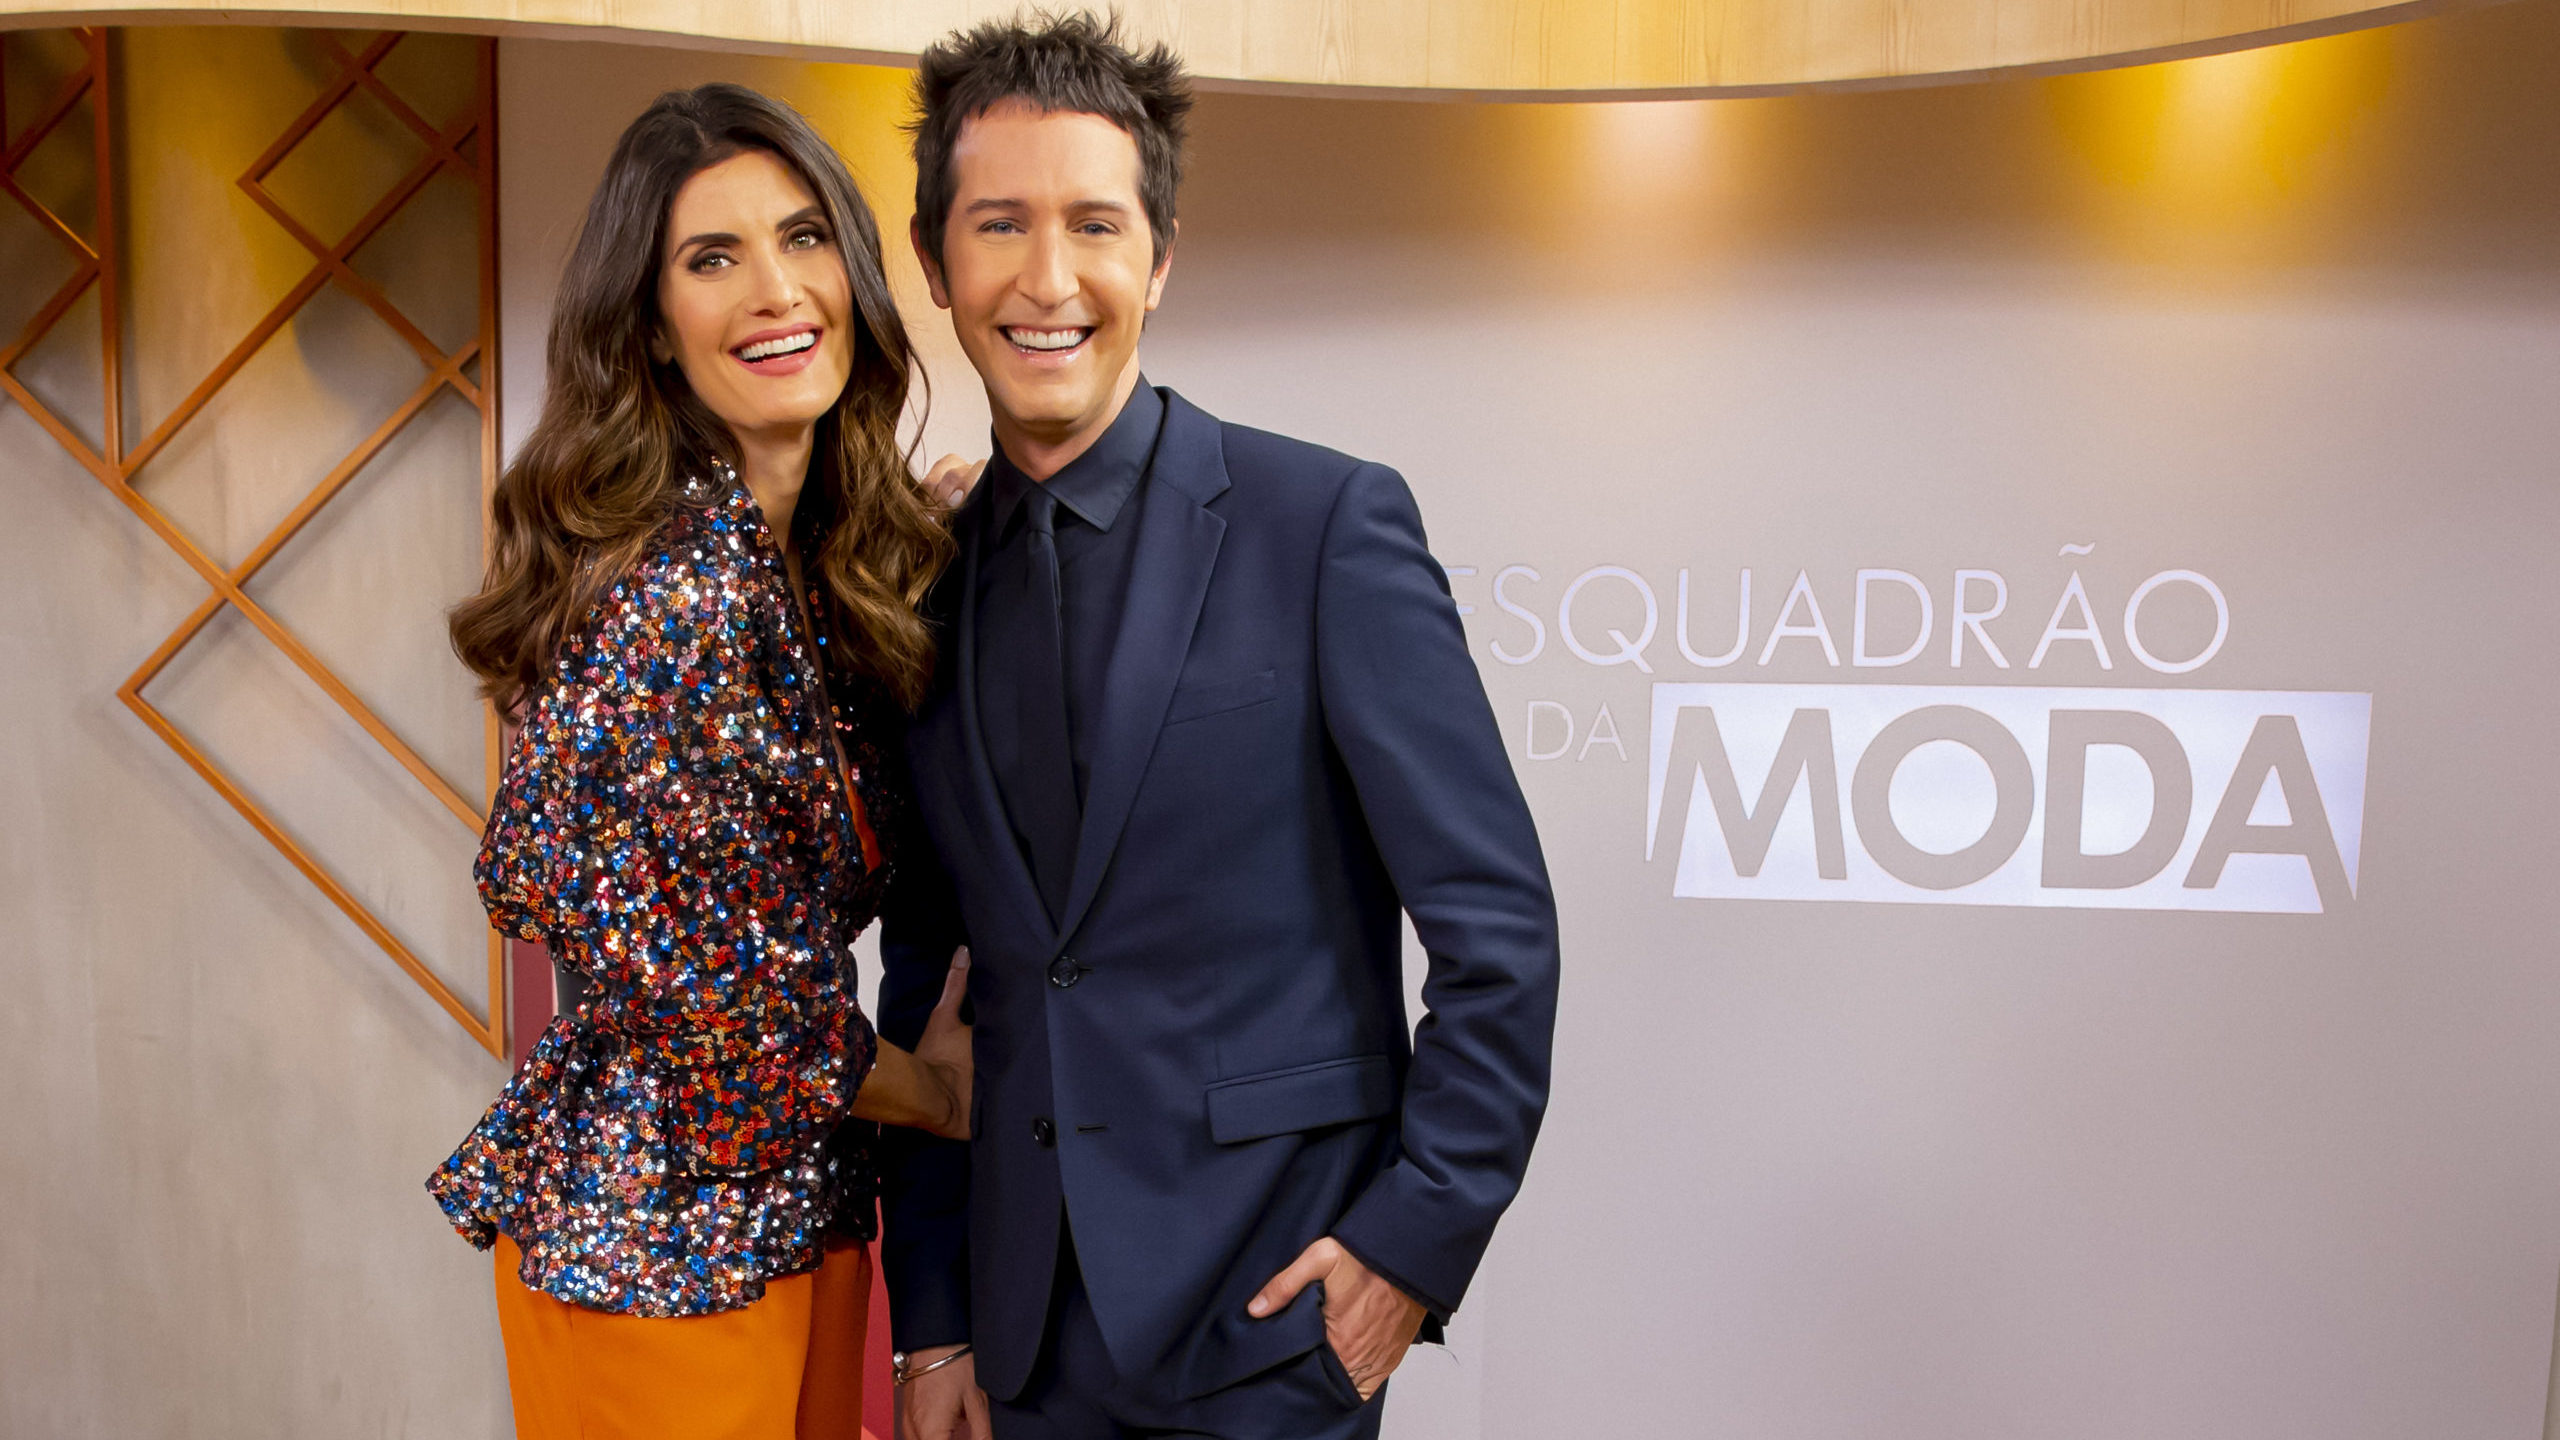 Arlindo Grund e Isabela Fiorentino, apresentadores do Esquadrão da Moda (Gabriel Cardoso / SBT)